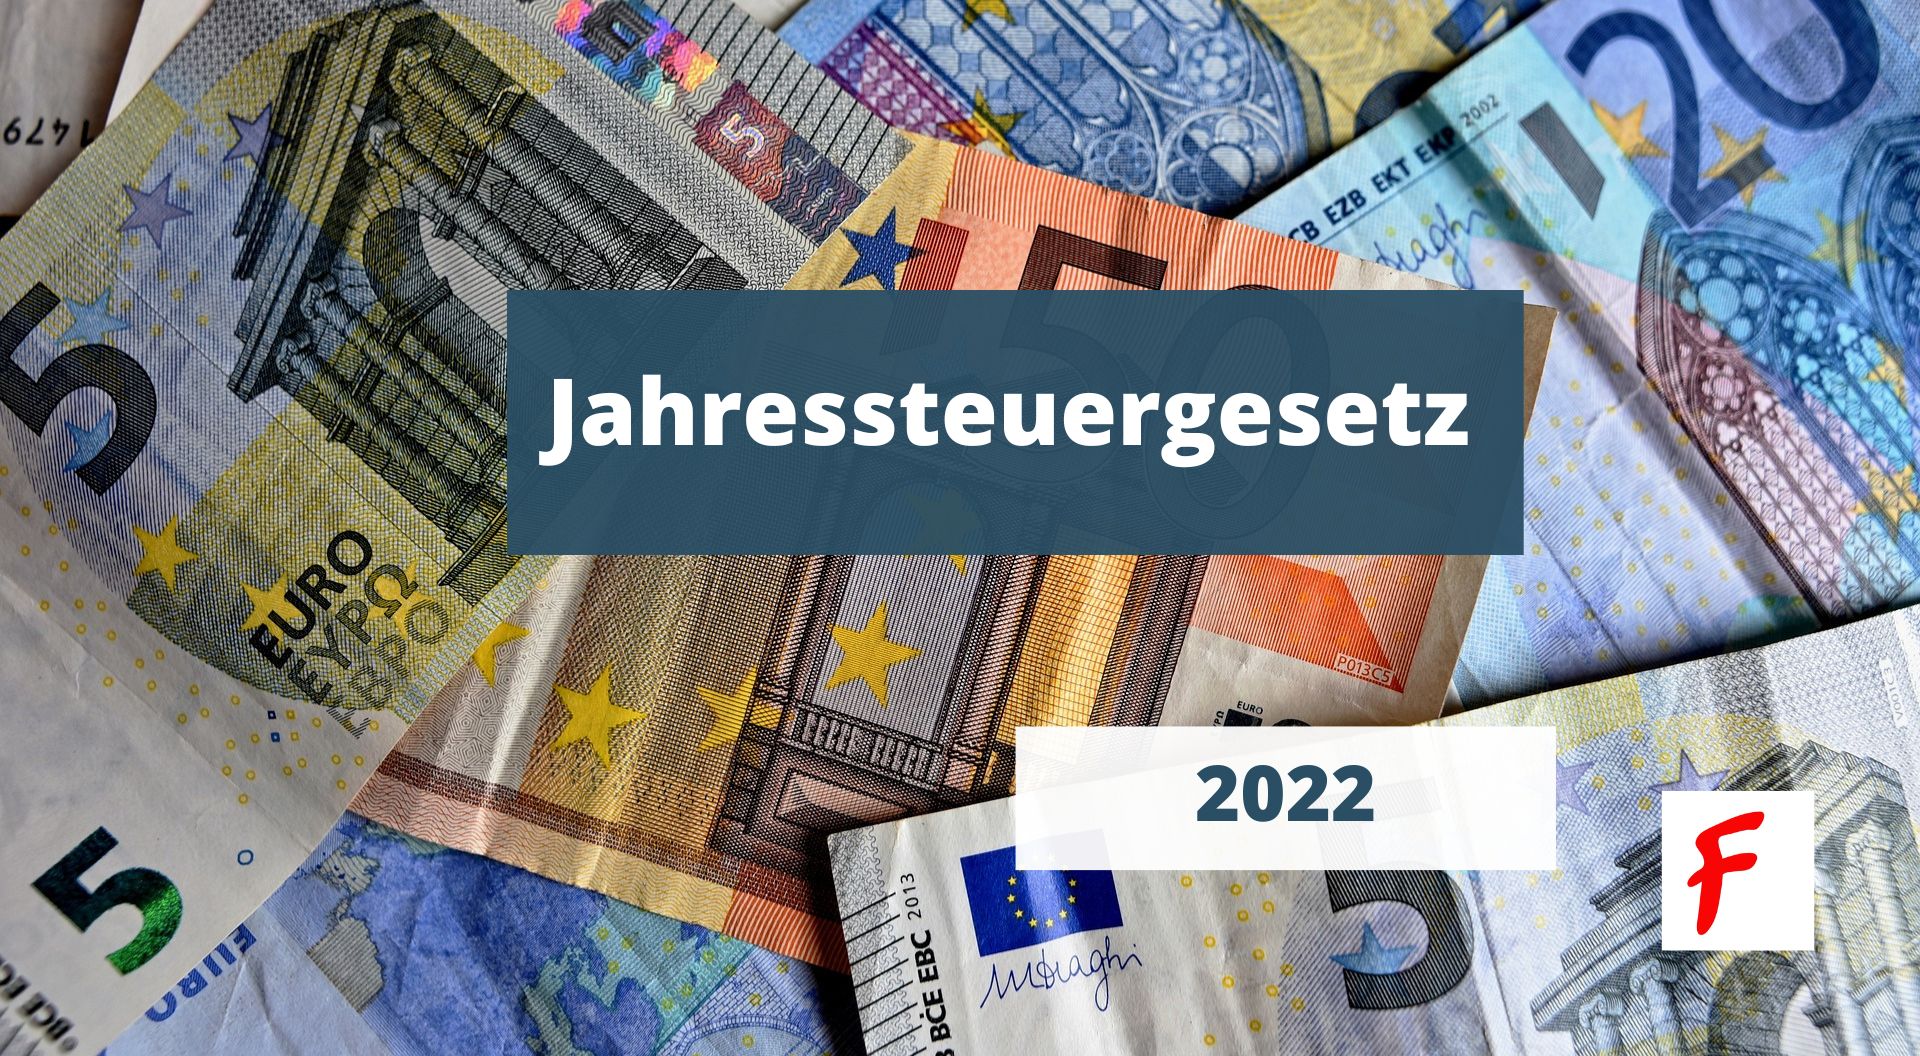 Изменения в закон о ежегодном налогообложении 2022 в Германии (Jahressteuergesetz, JStG 2022)